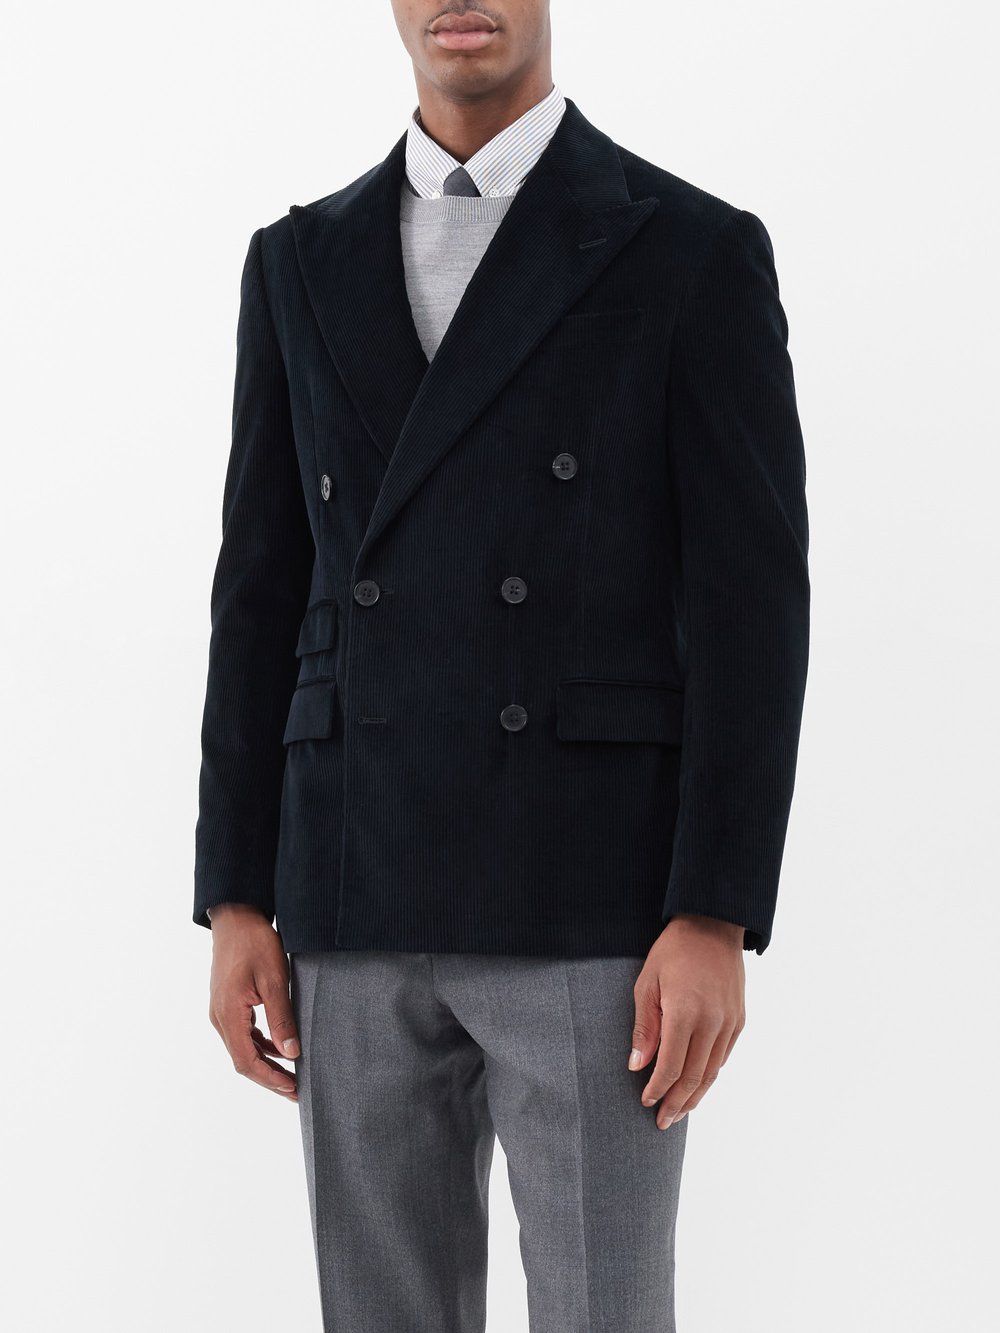 Двубортный пиджак из хлопка и вельвета kent Ralph Lauren, синий пиджак костюмный 46 черный